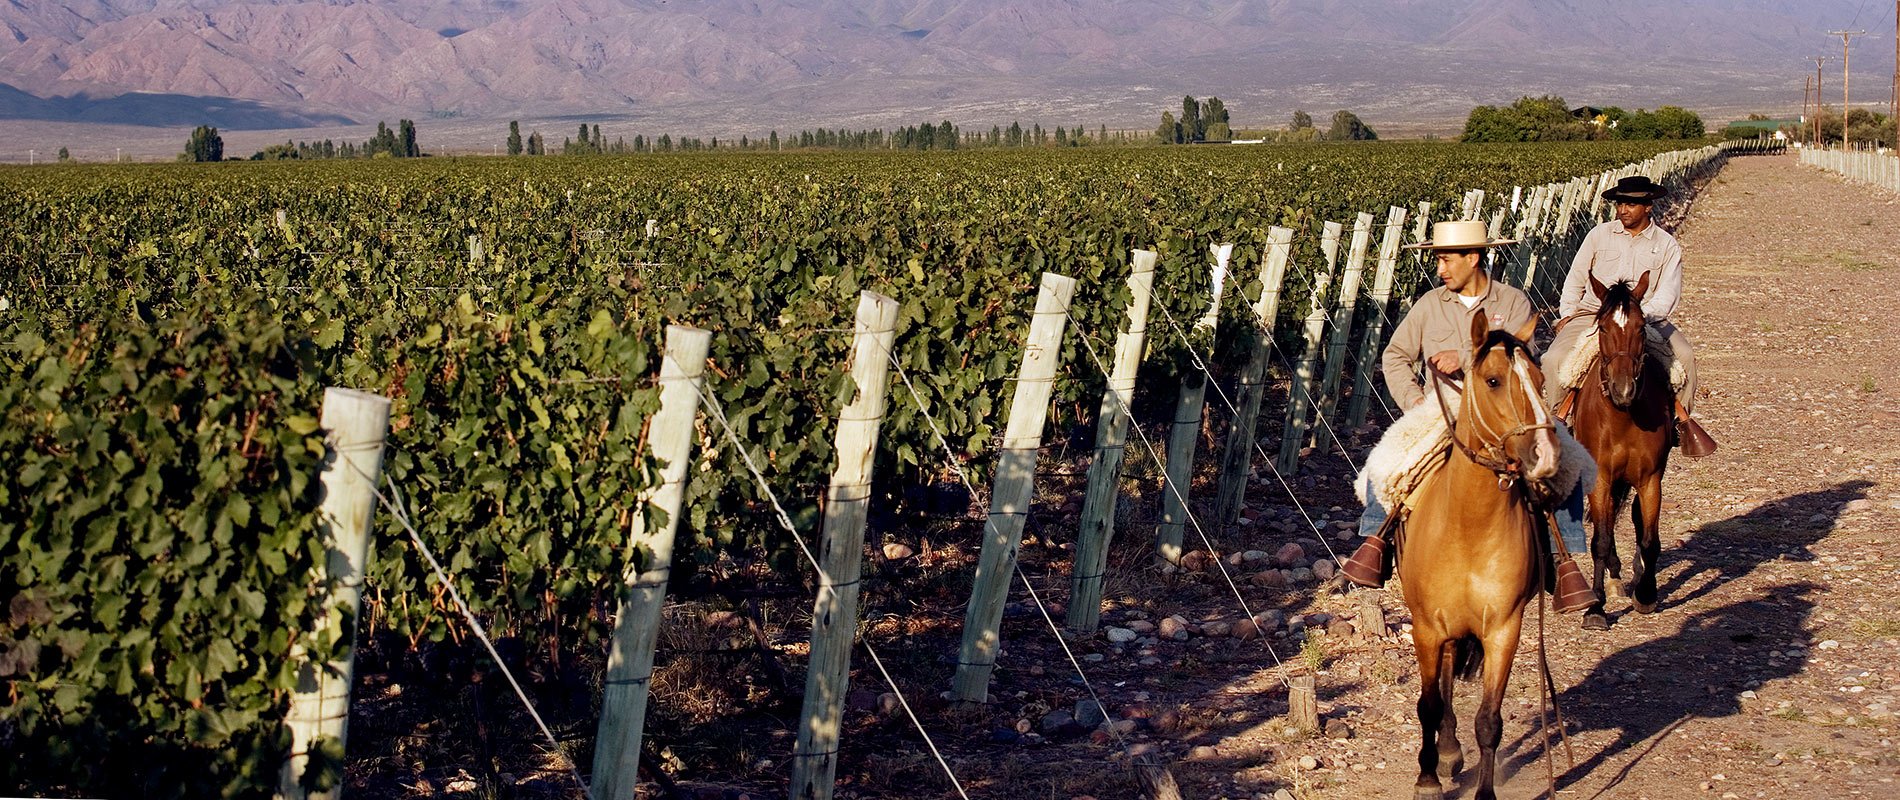 argentine vin vigne vignoble culture patrimoine montagne mendoza gauchos cheval vigneron viticulteur